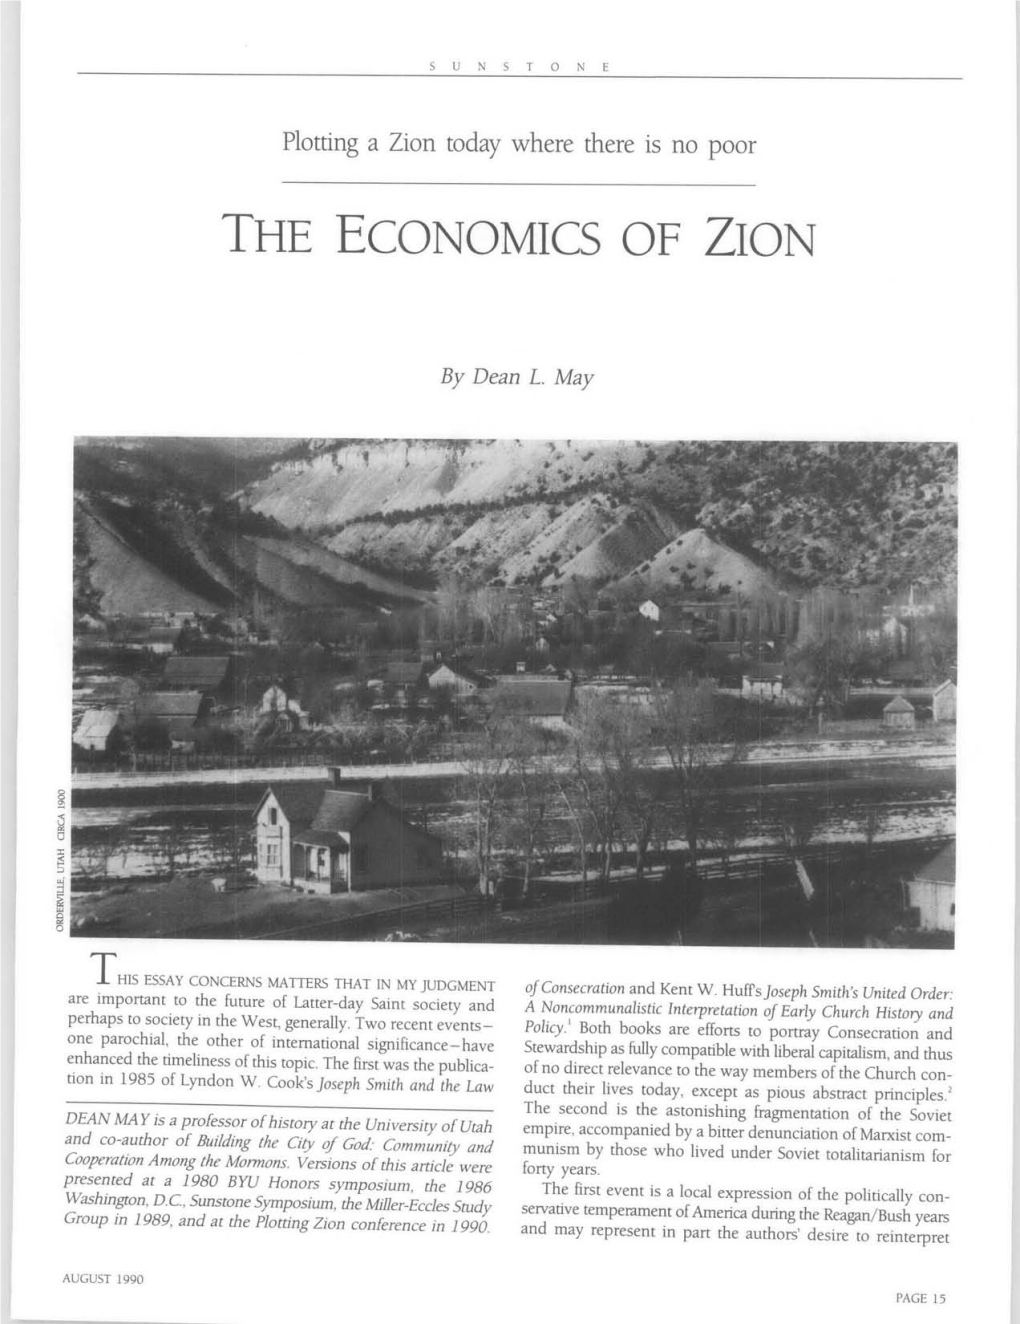 The Economics of Zion